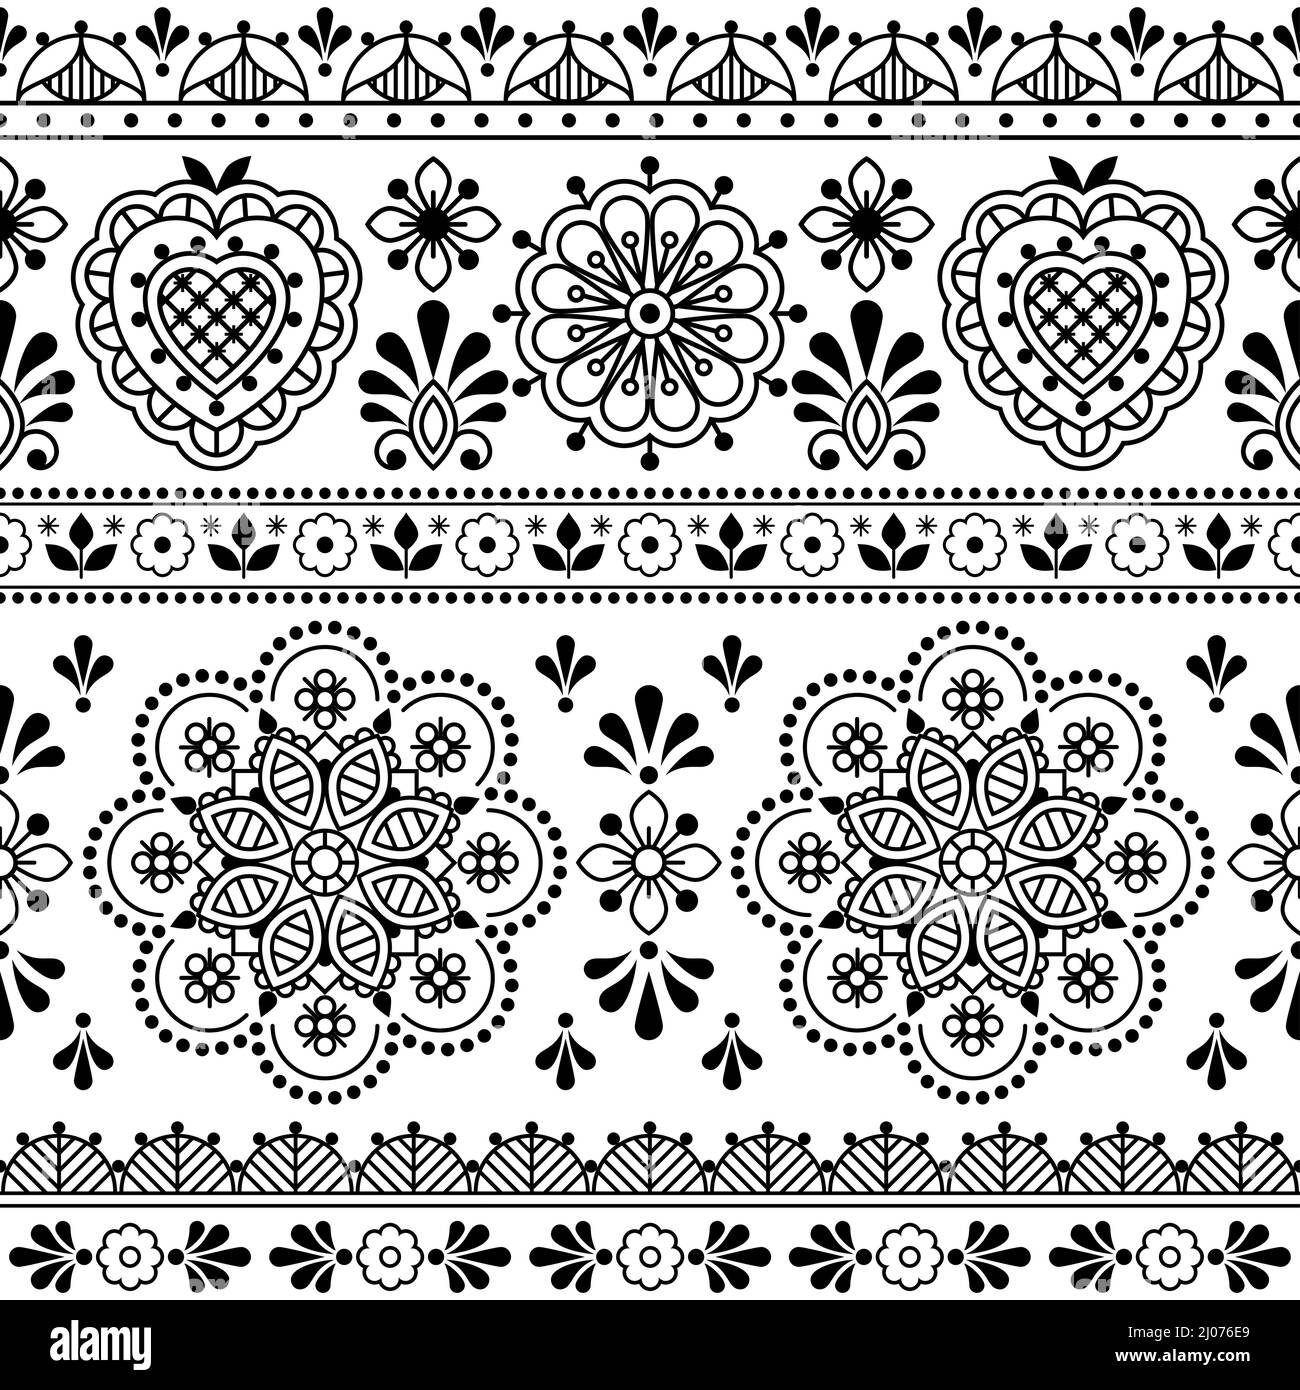 Scandinavian folk art vettoriale bianco e nero stampa tessile o tessuto senza cuciture, ncute design ripetitivo con fiori ispirati al pizzo e al ricamo bac Illustrazione Vettoriale